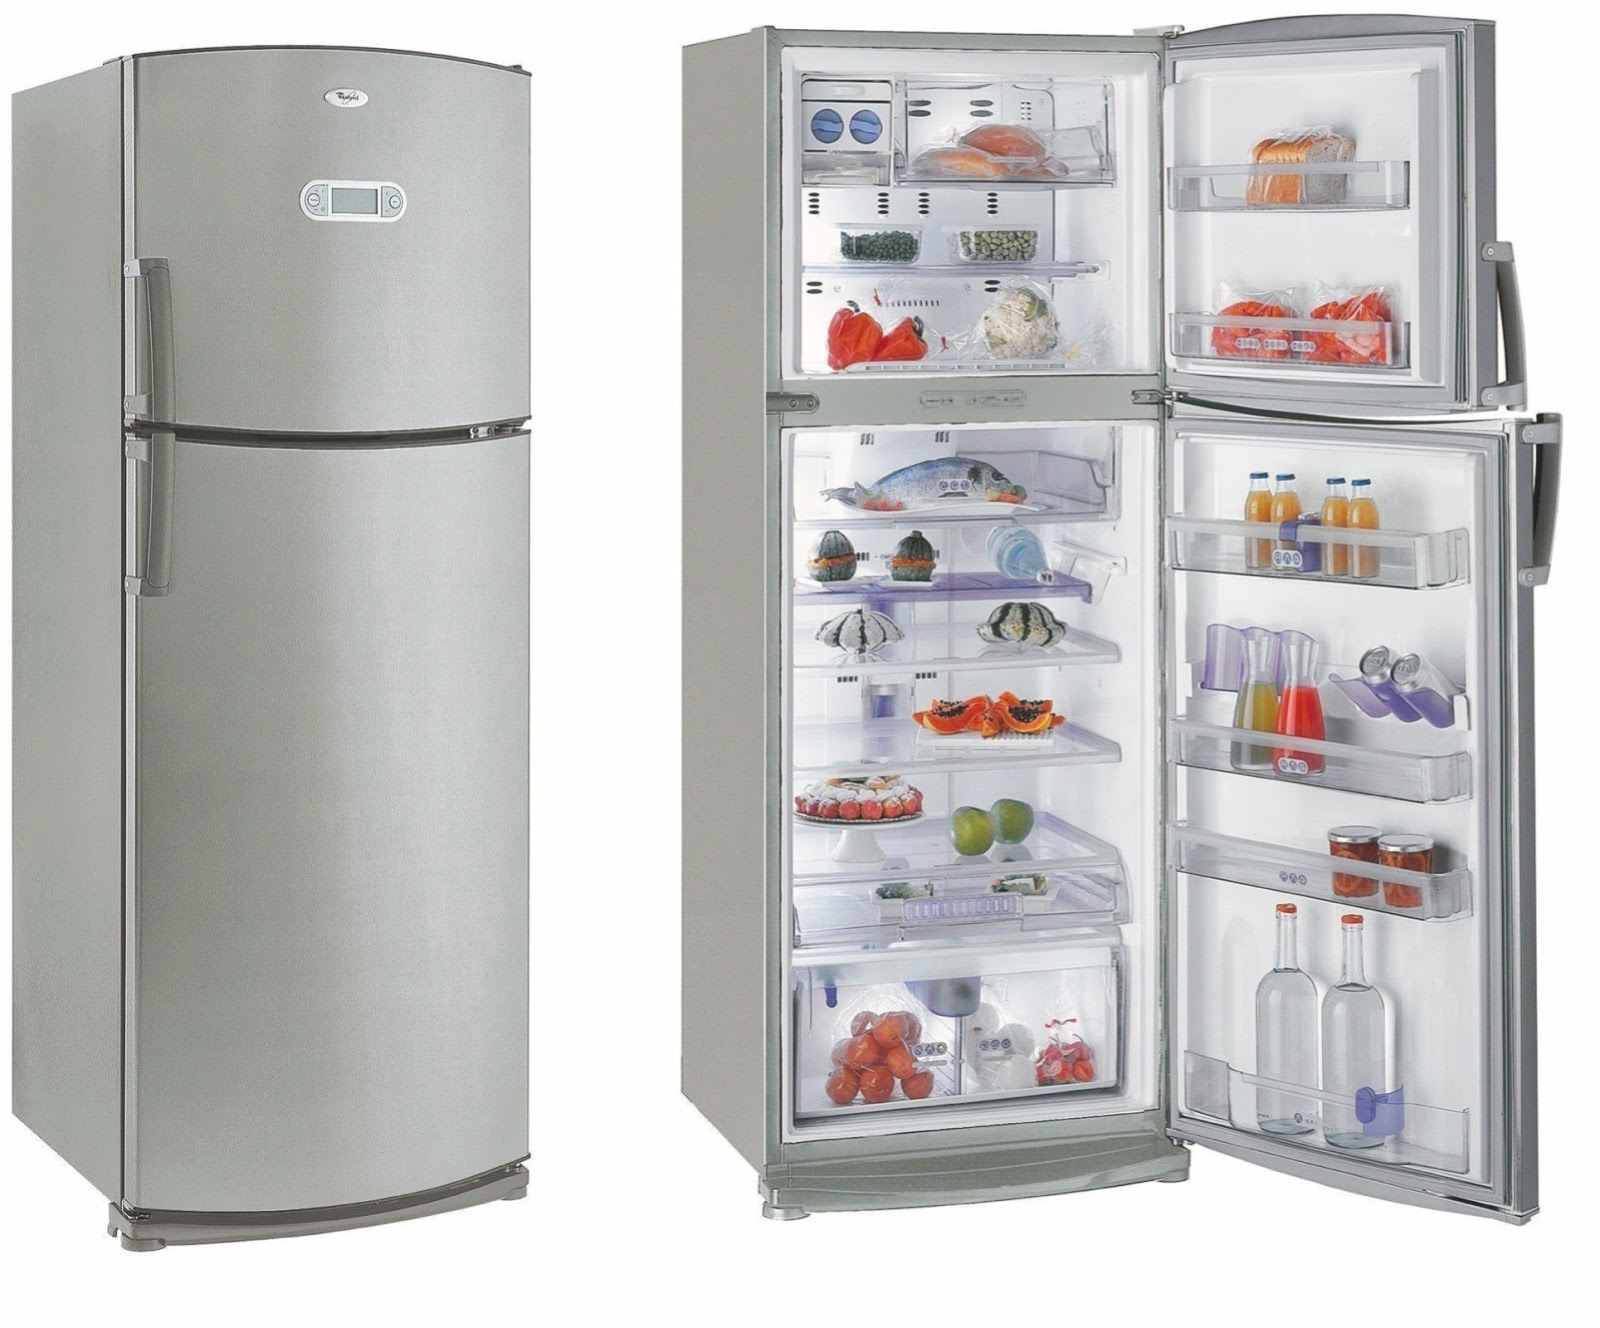 Энергопотребление холодильника может зависеть от его объема